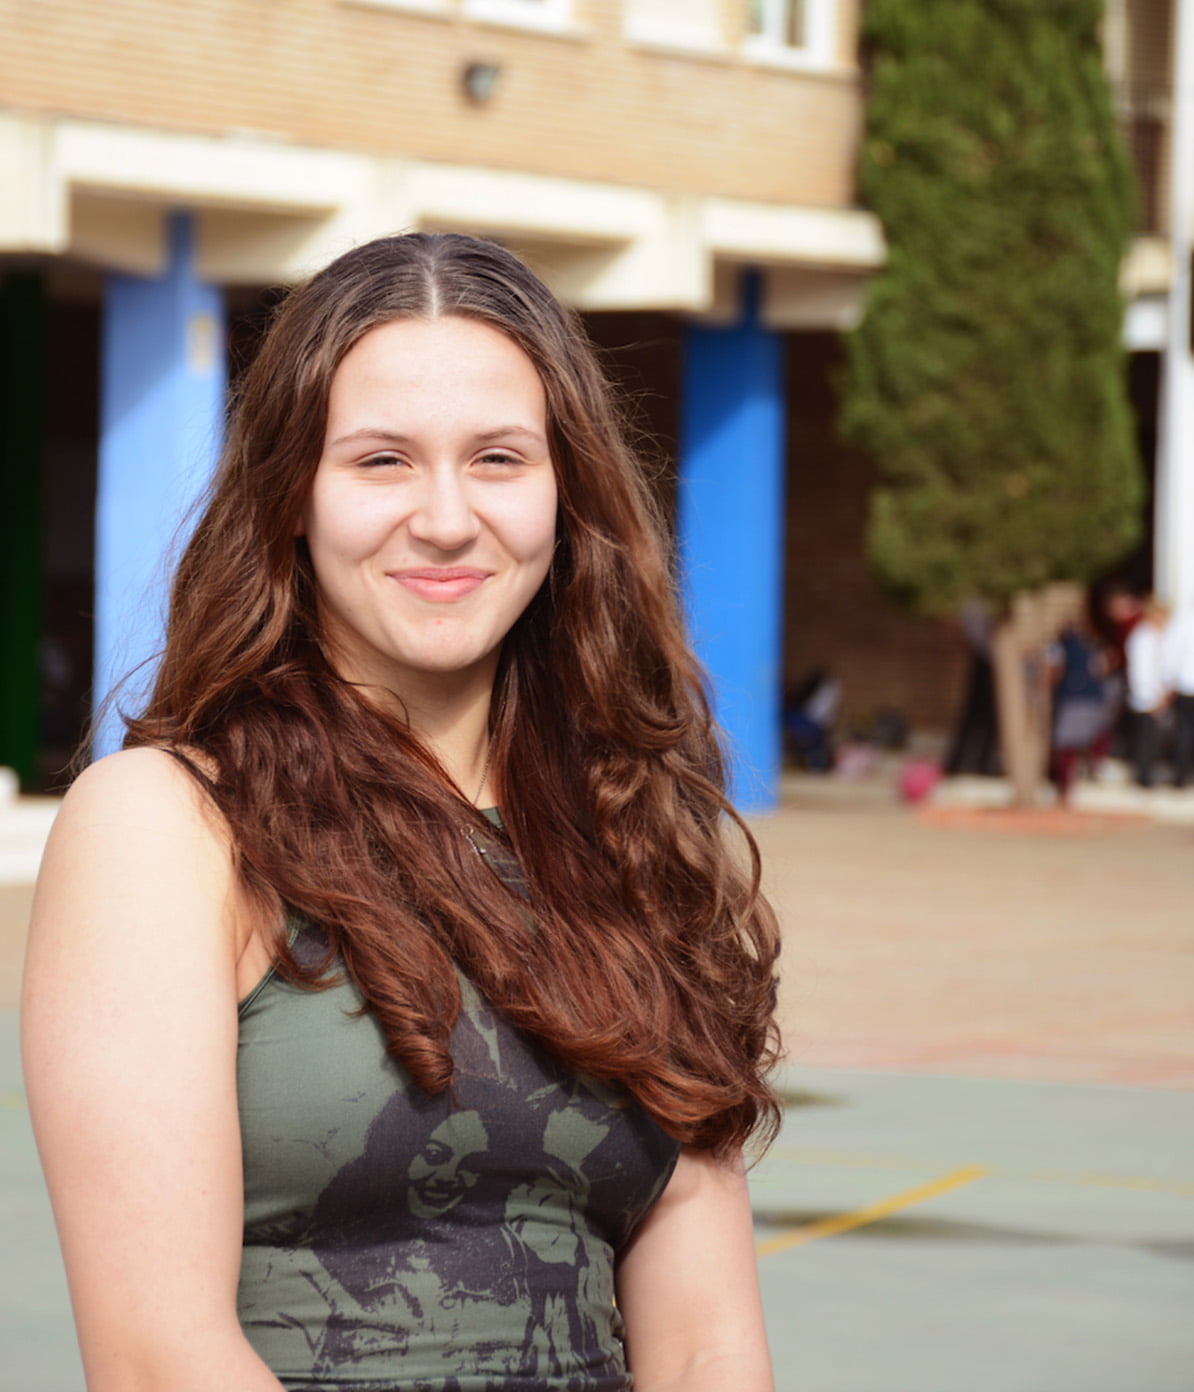 Porträttbild på Olivia, elev på utbytesresa i Spanien.